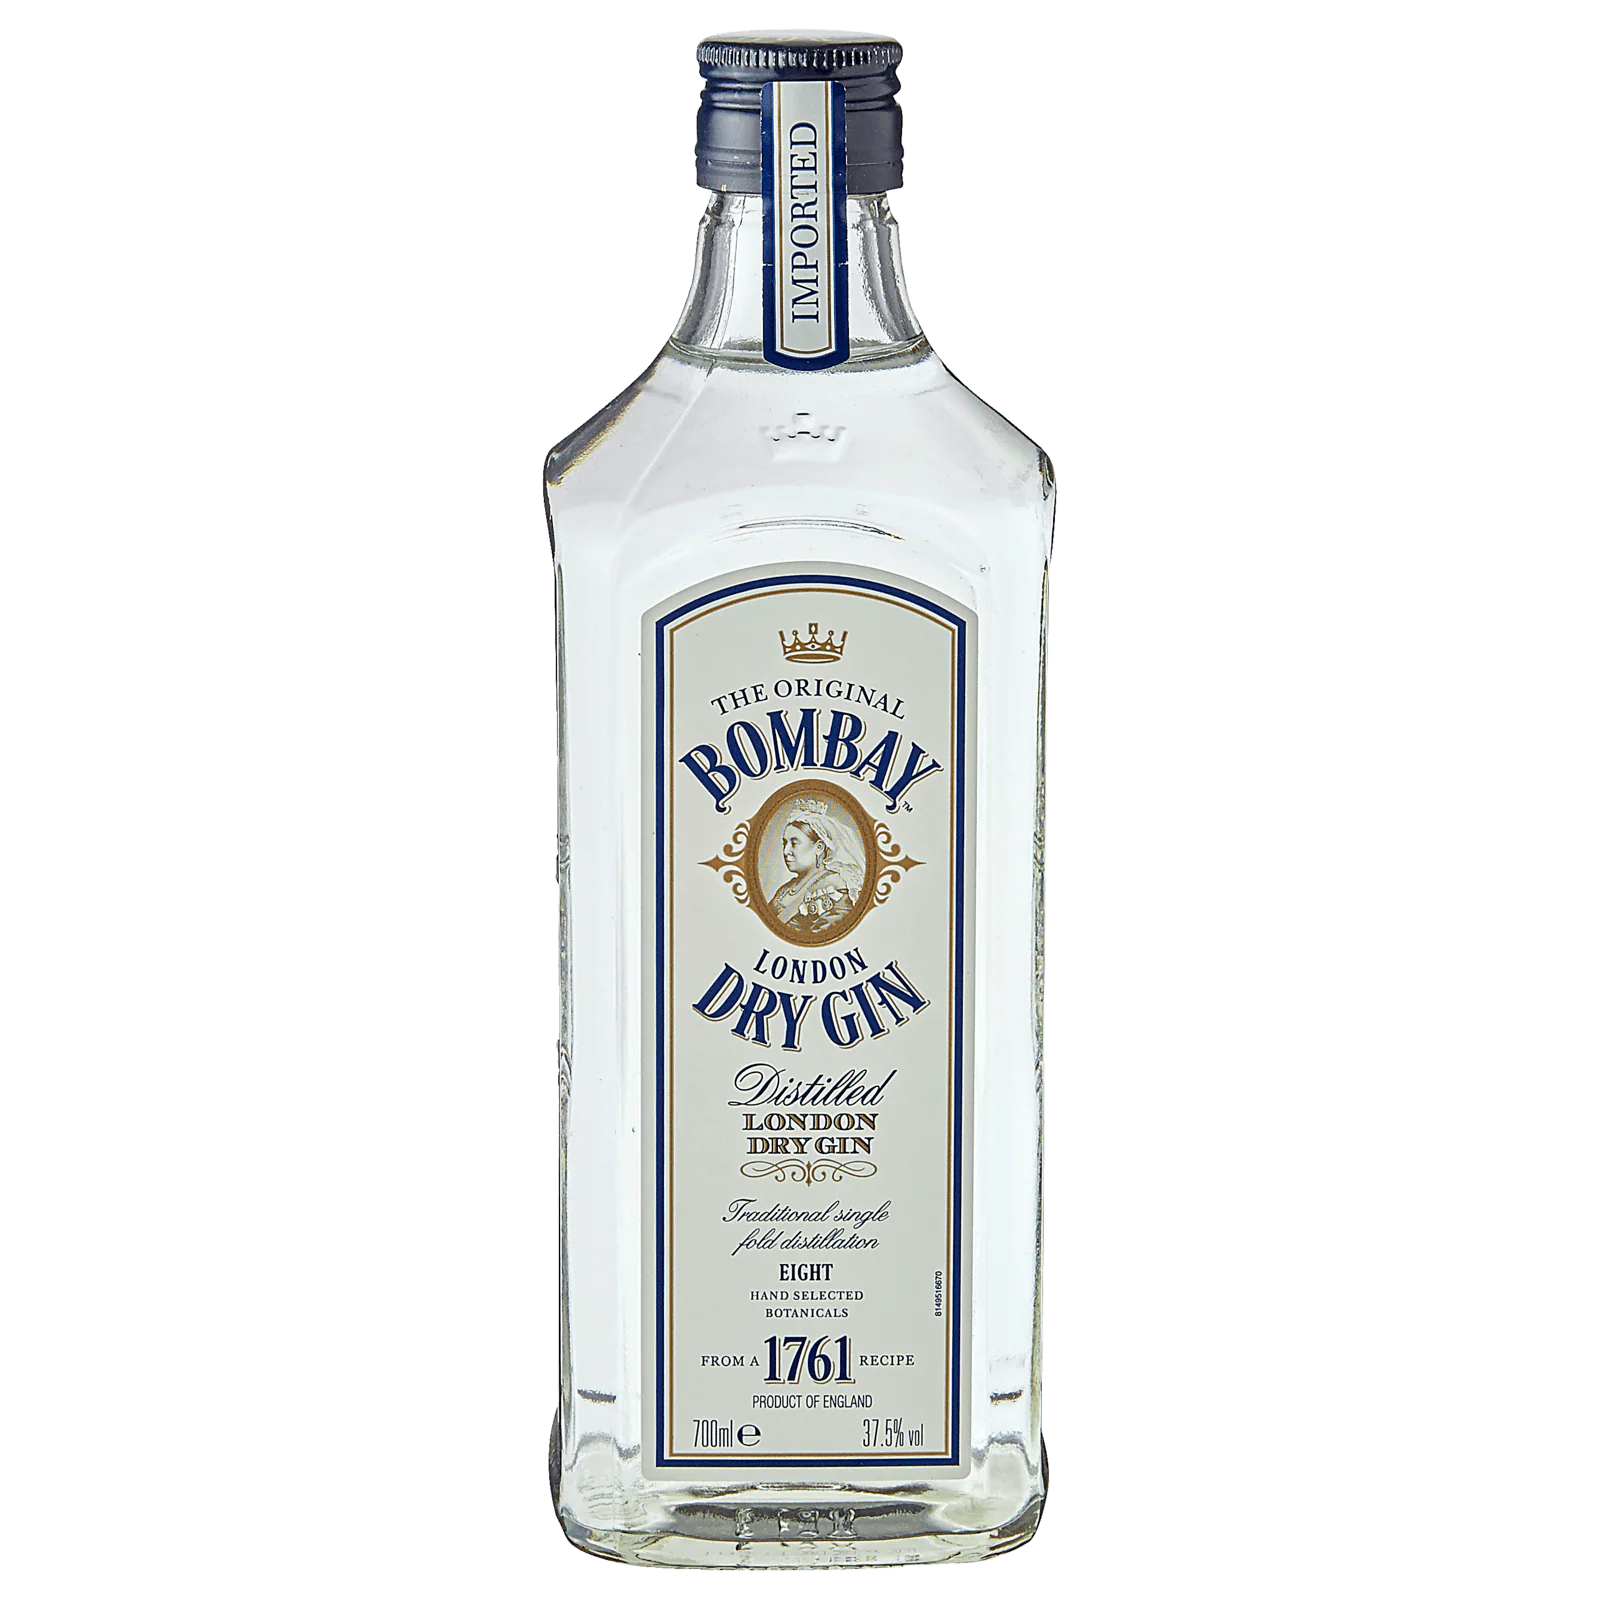 Verkaufsvolumen Shiva Oriental Spiced London 40% für Vol Gin Lidl Dry von 9,99€